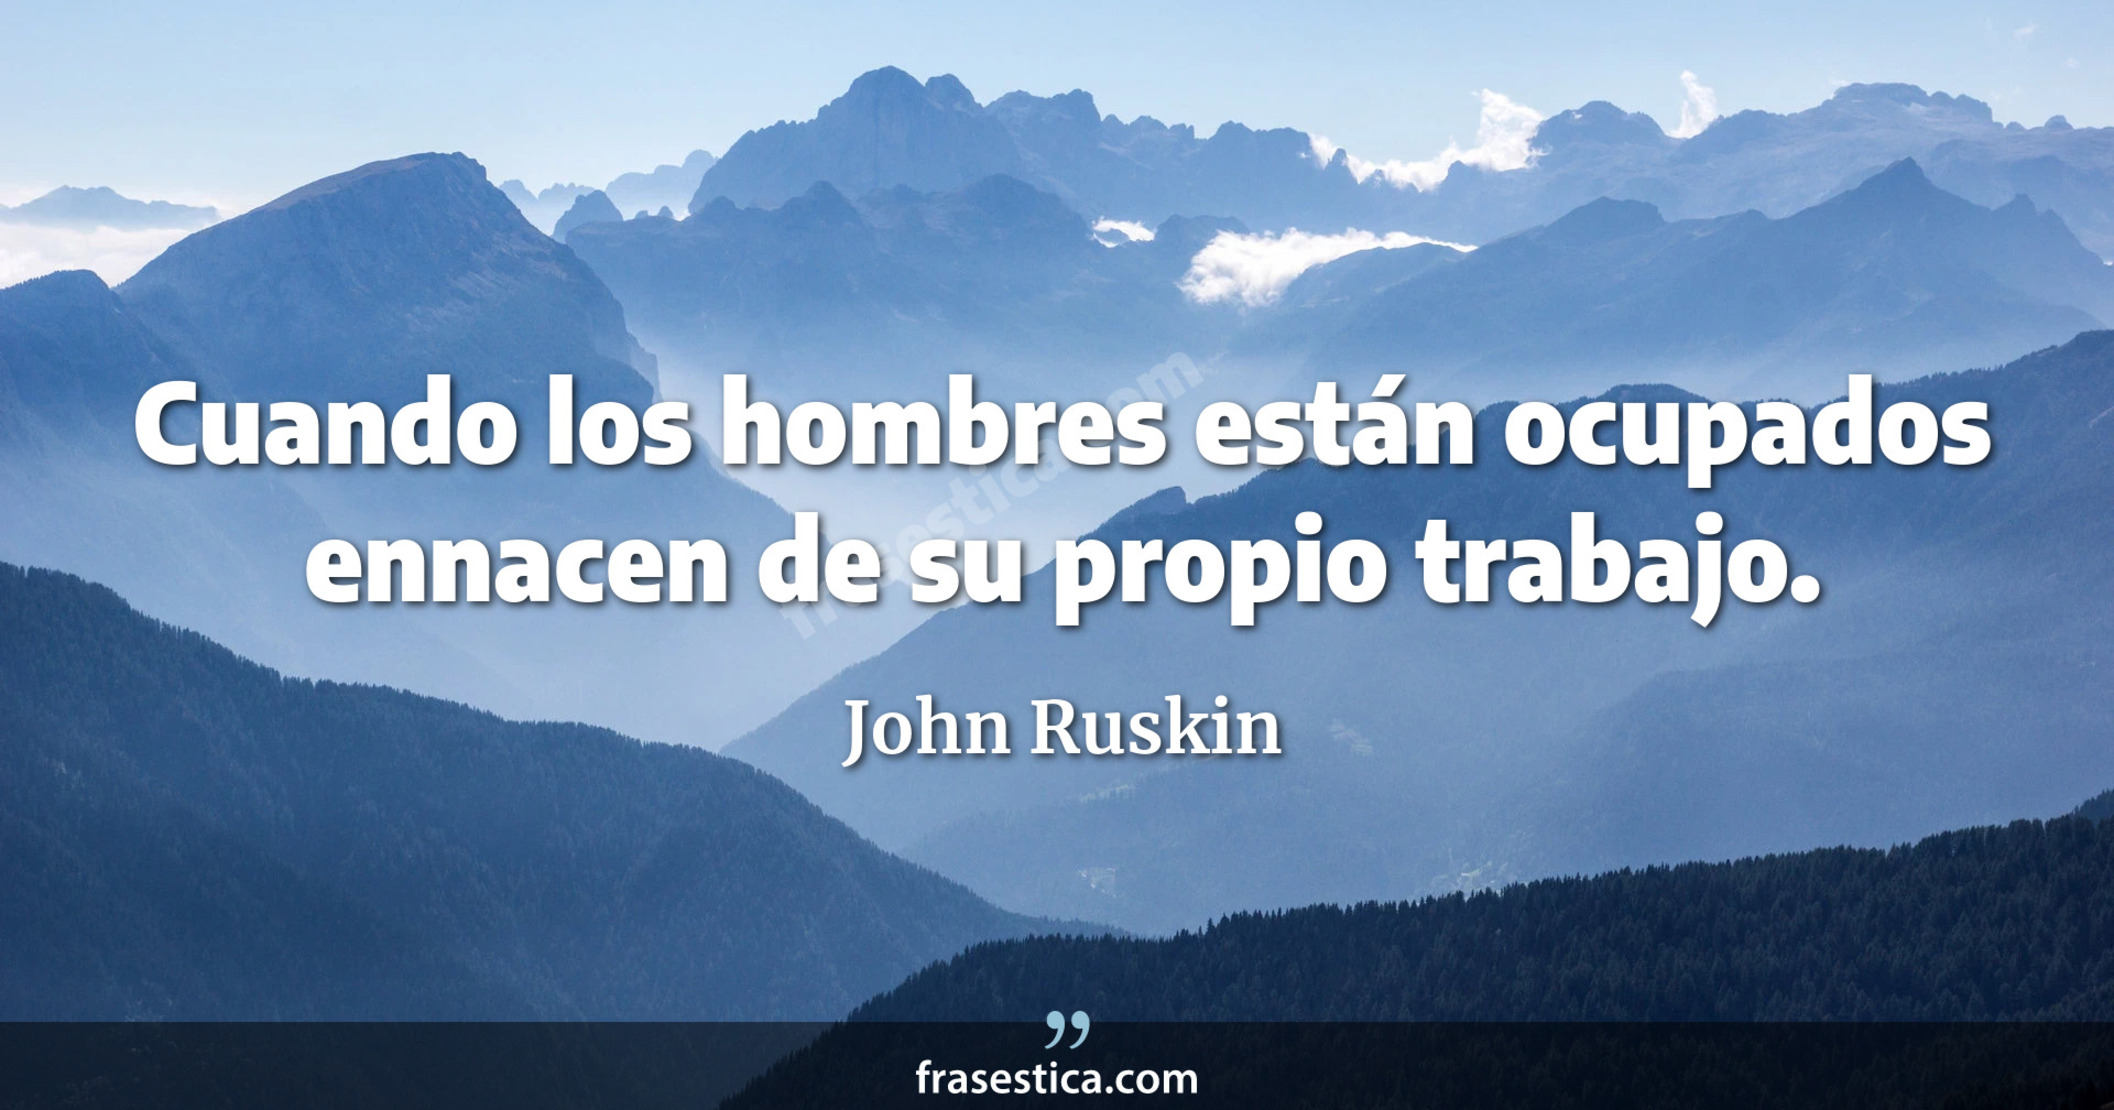 Cuando los hombres están ocupados ennacen de su propio trabajo. - John Ruskin